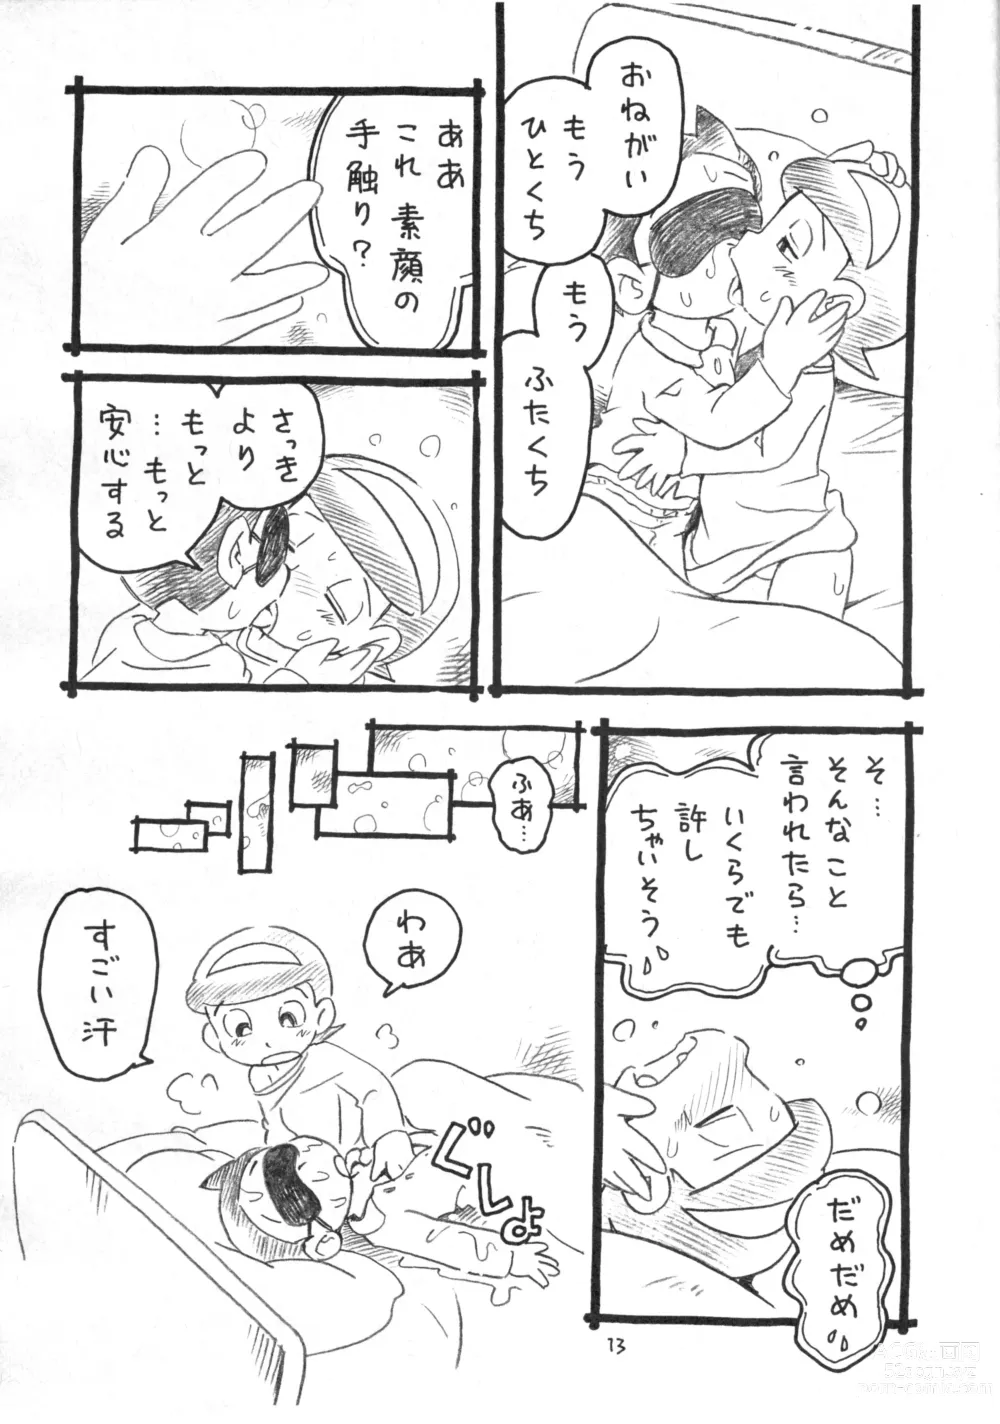 Page 29 of doujinshi Okusuri Chuu